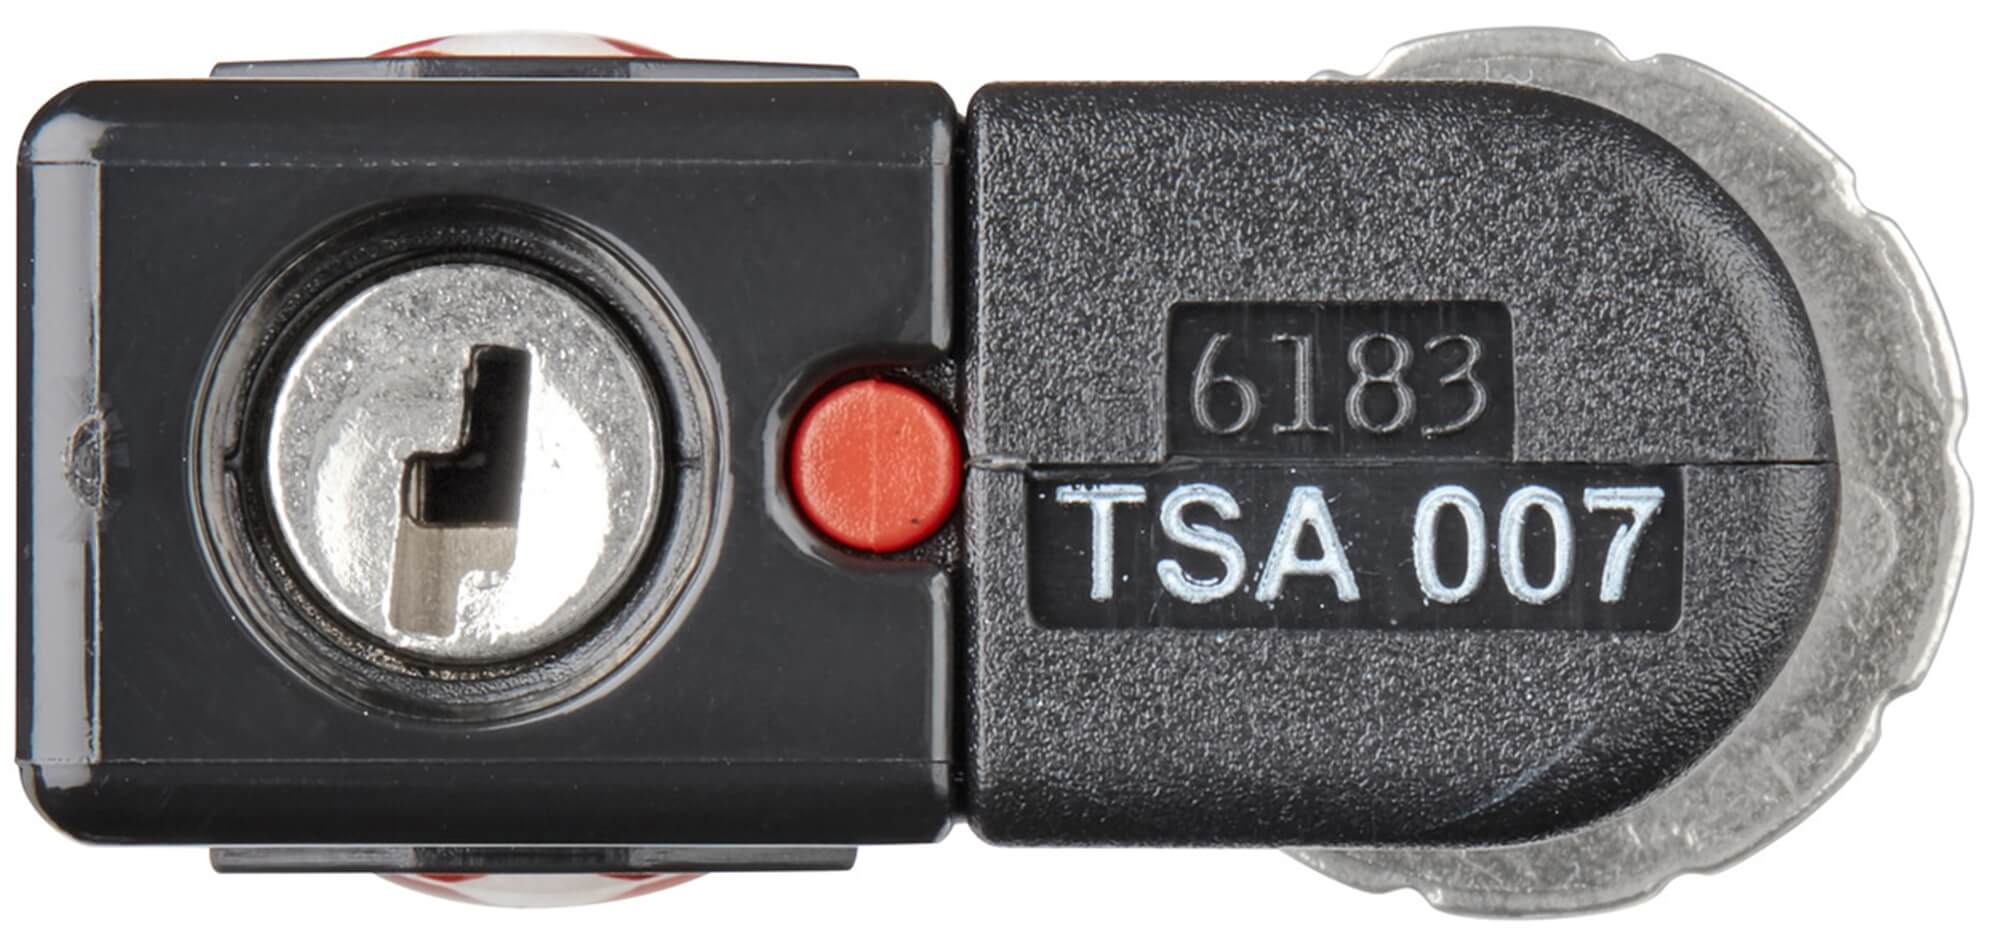 Cadeado de Viagem Wenger com TSA Lock de 3 combinações